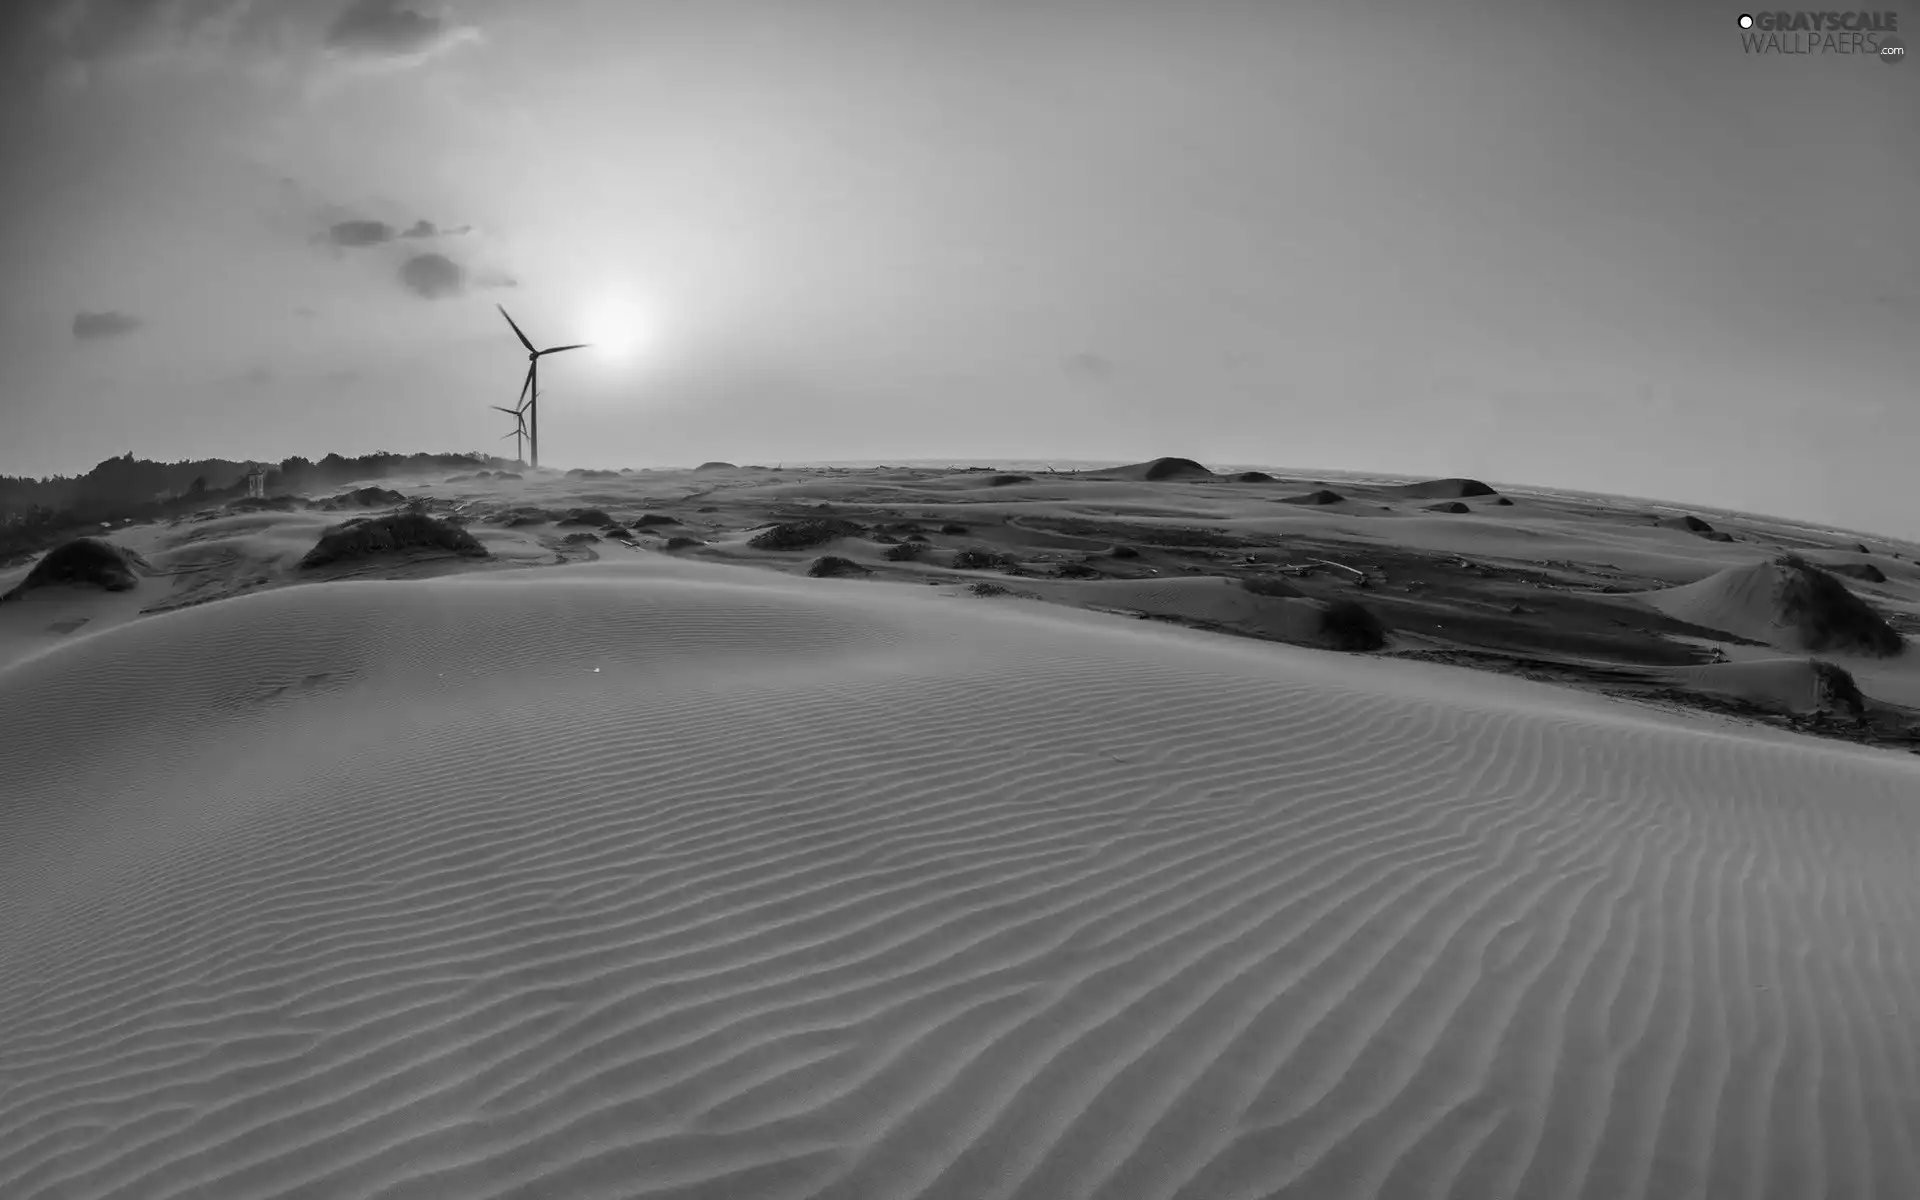 Windmill, Desert, Sand